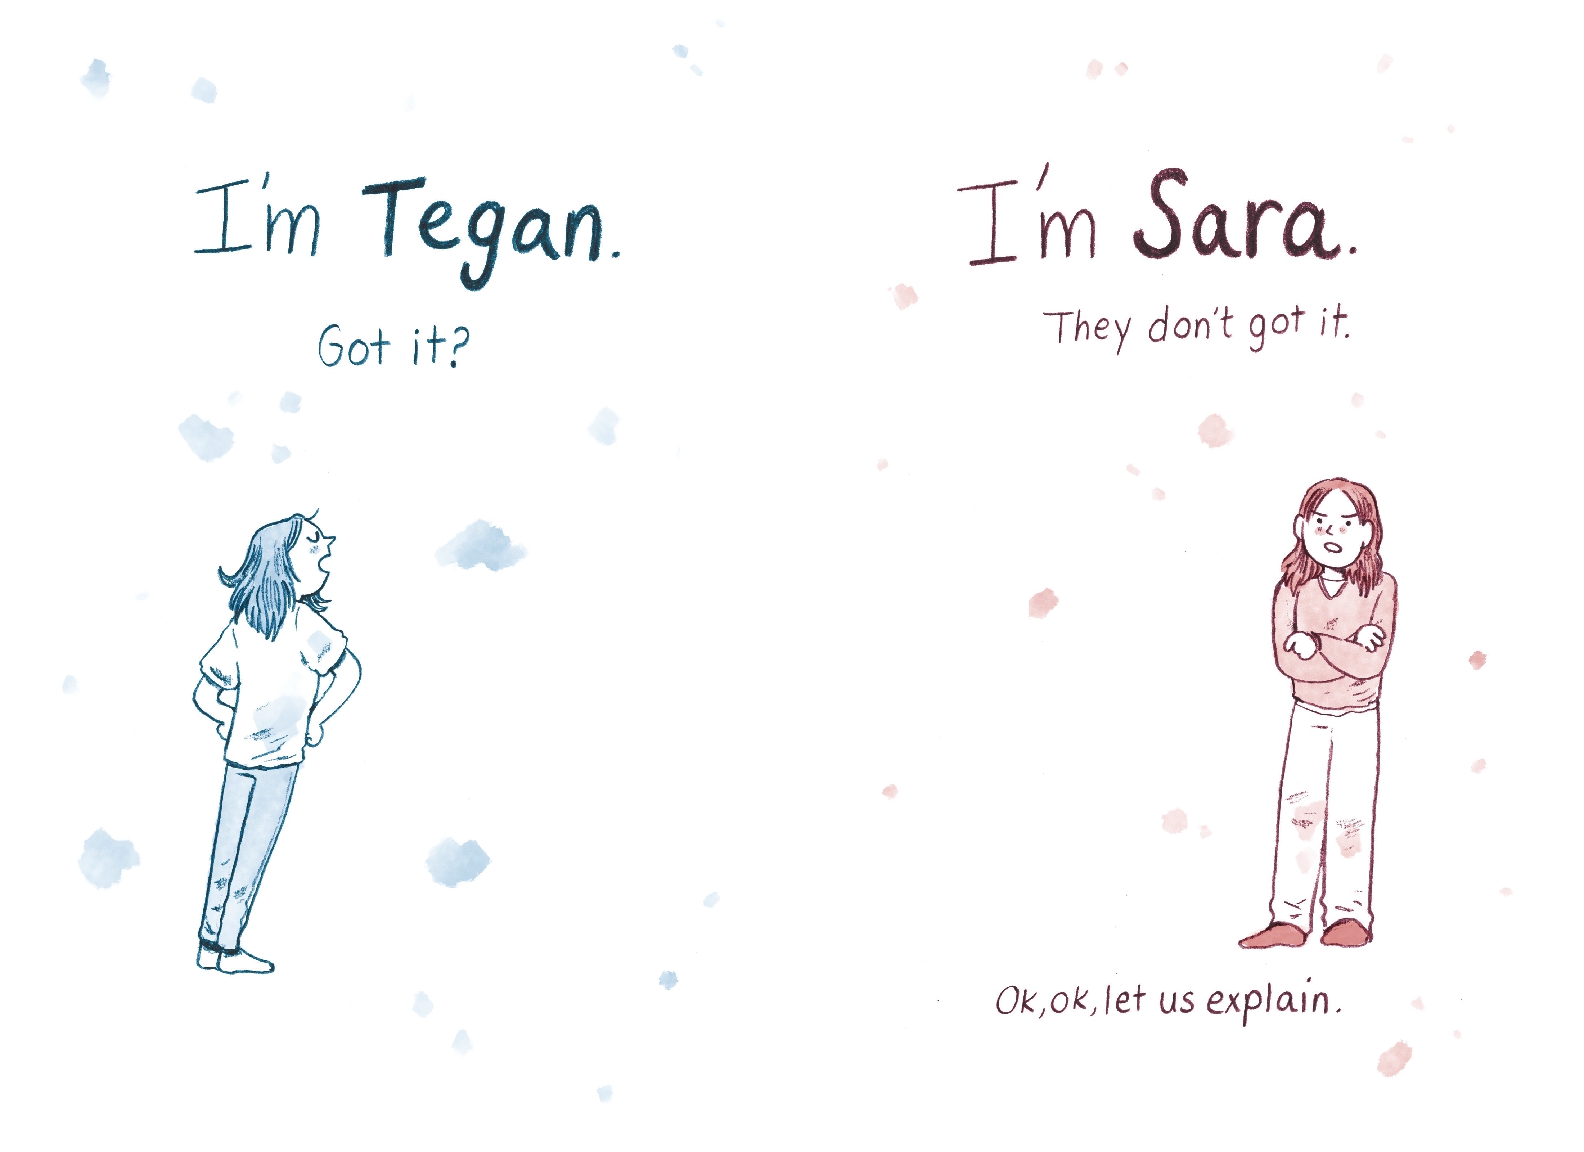 Tegan and Sara: Junior High